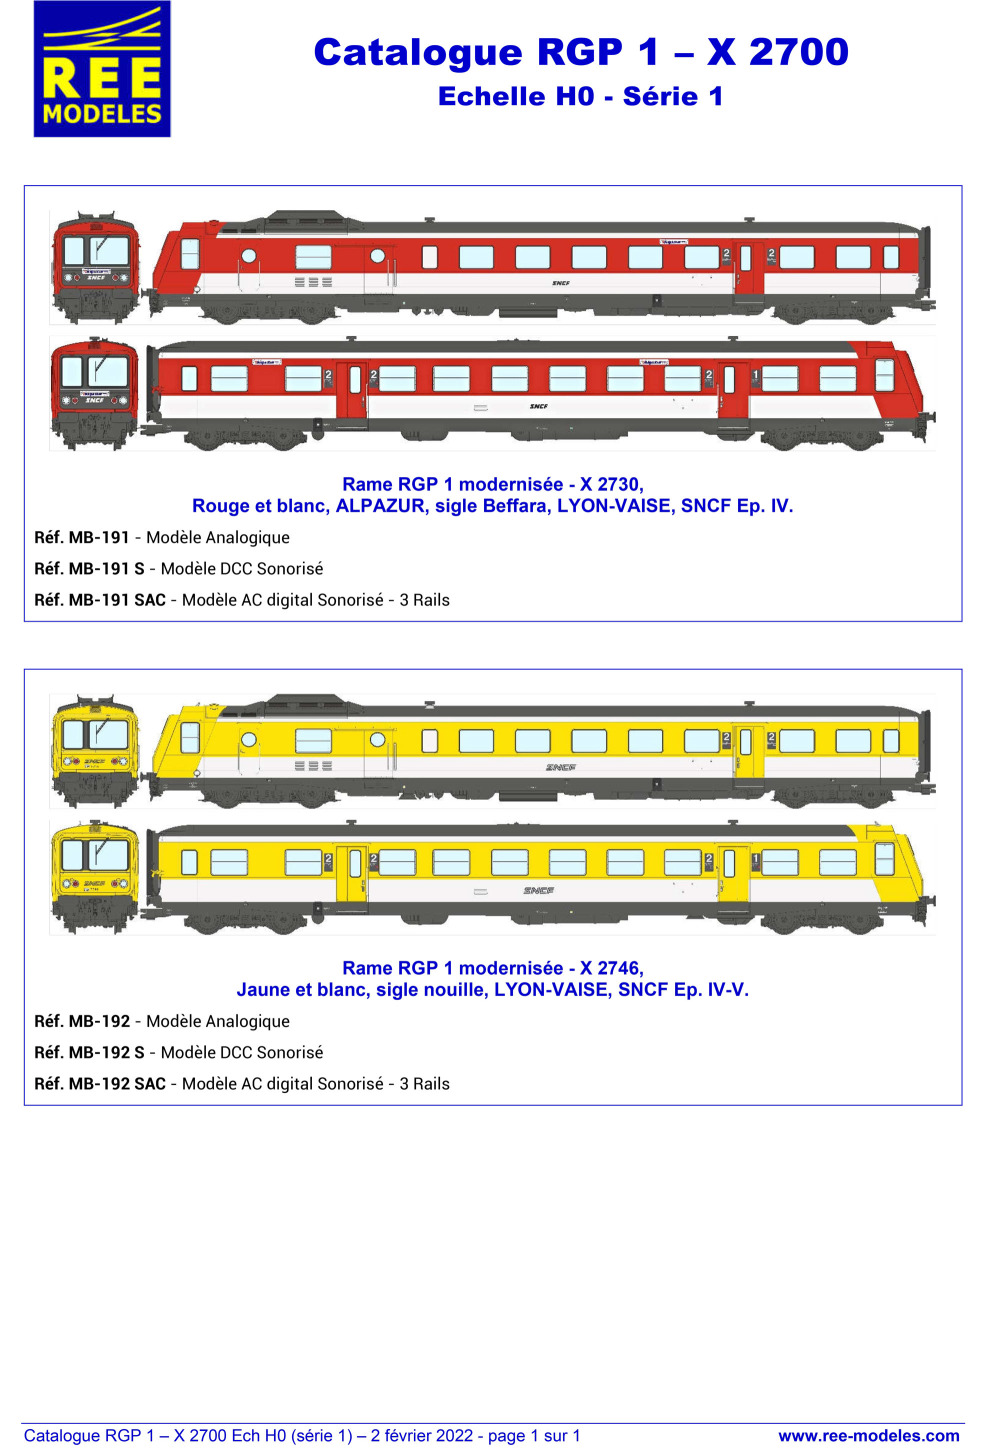 Rails Europ Express - SNCF - RGP 1 - X 2700 diesel multiple unit